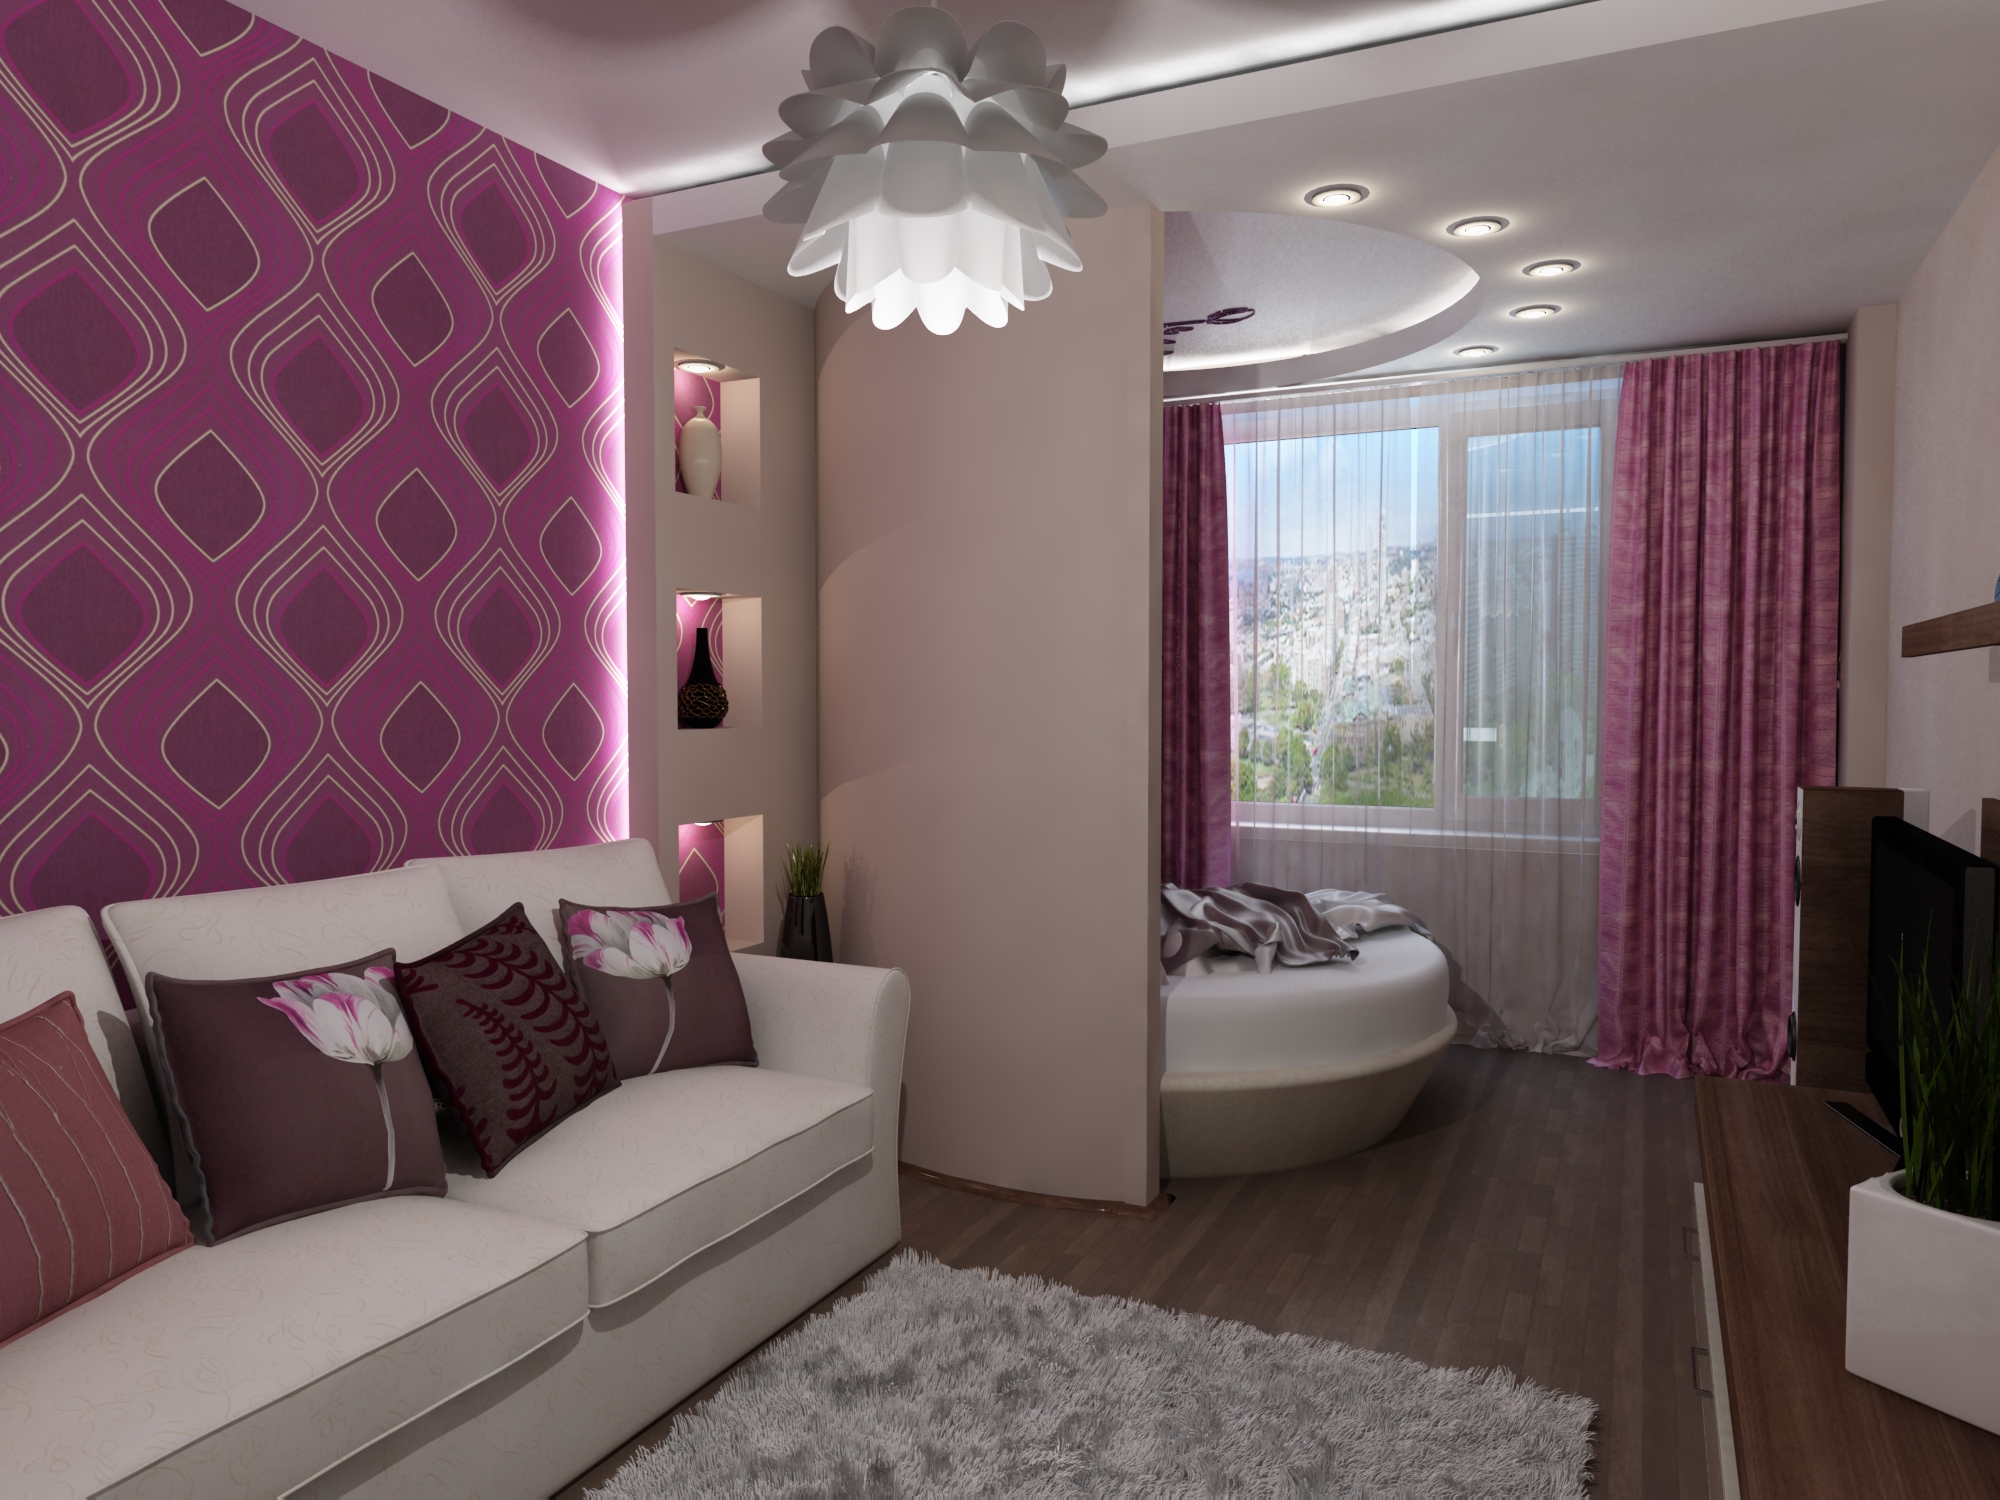 Дизайн комнаты гостиная-спальня площадью 20 метров